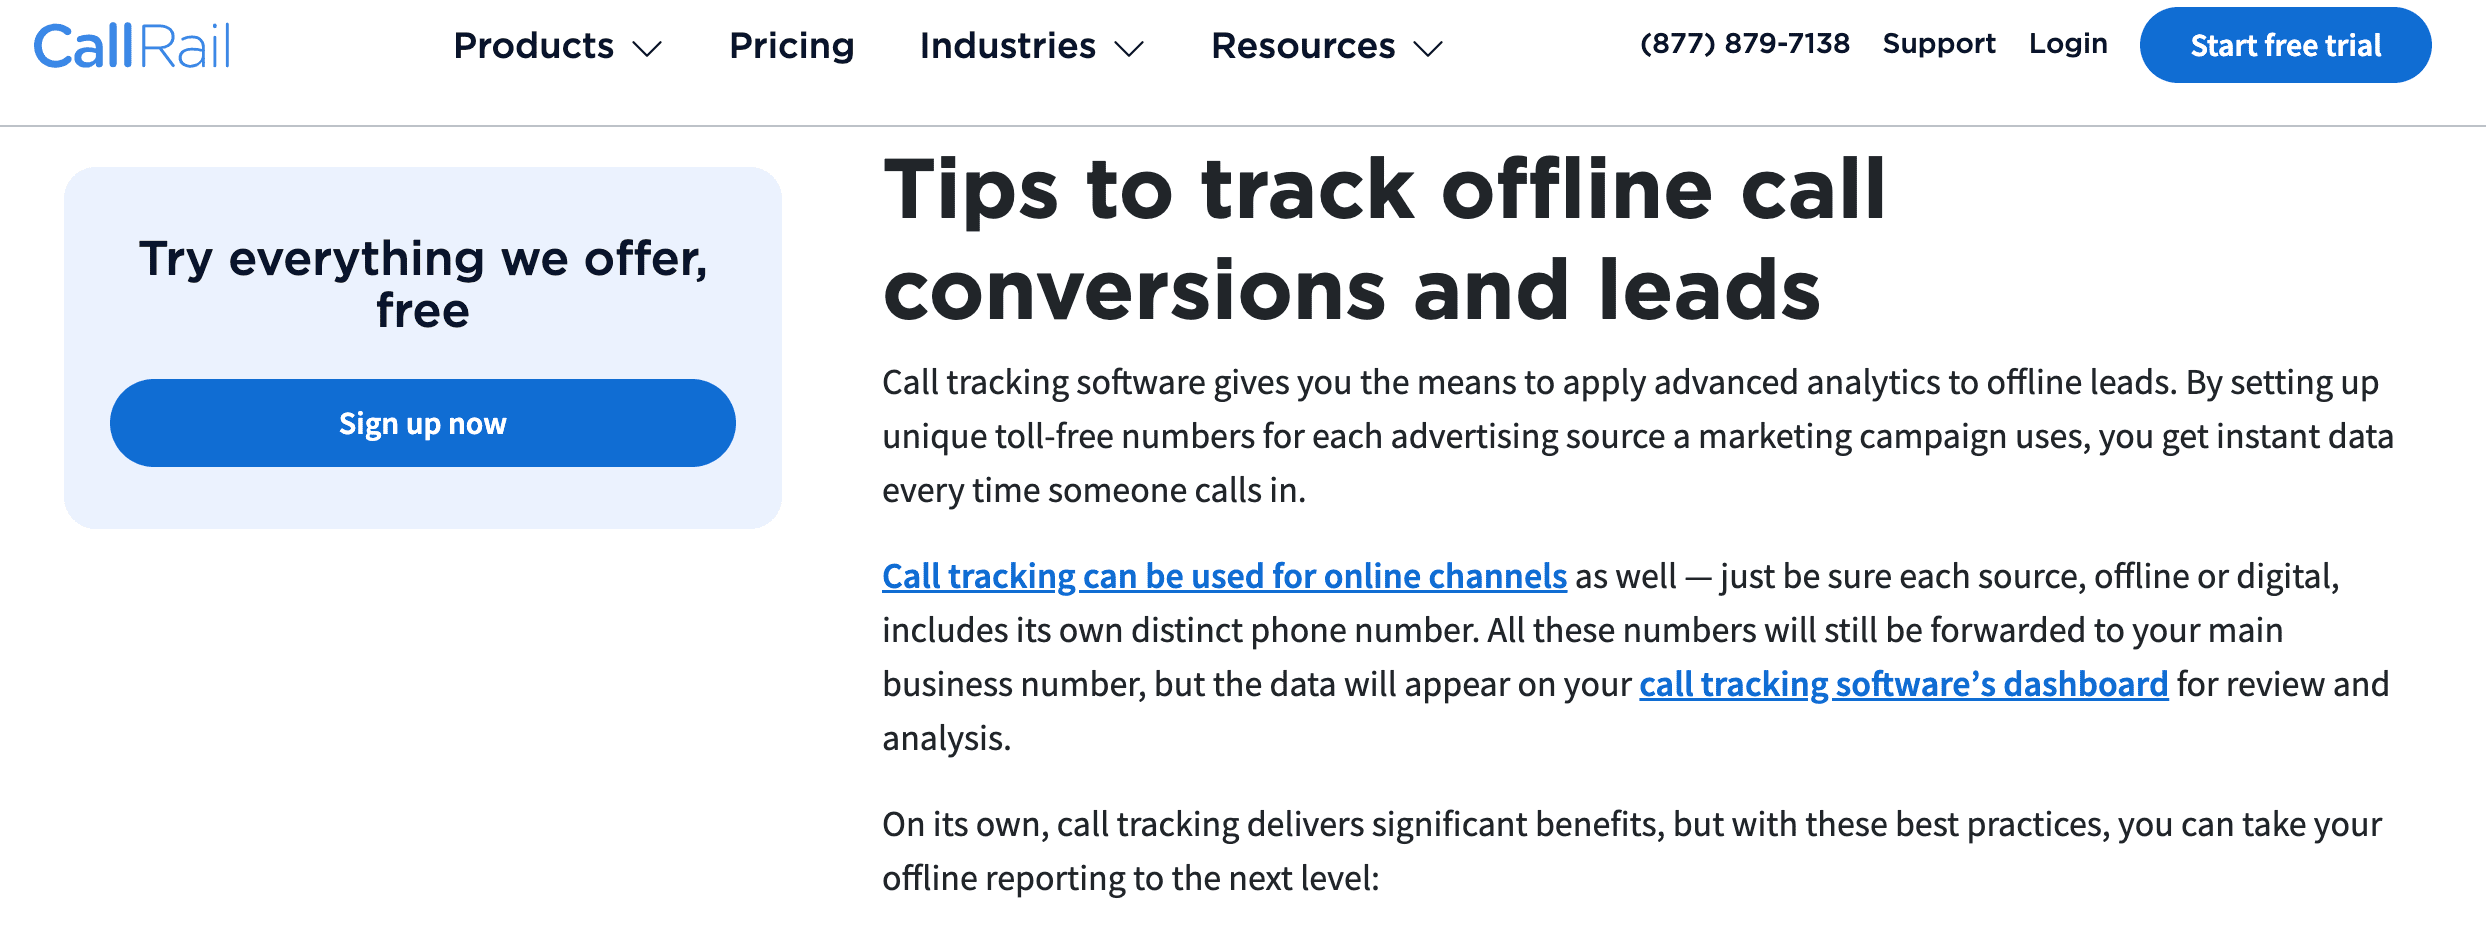 callrail offline tracking basic option